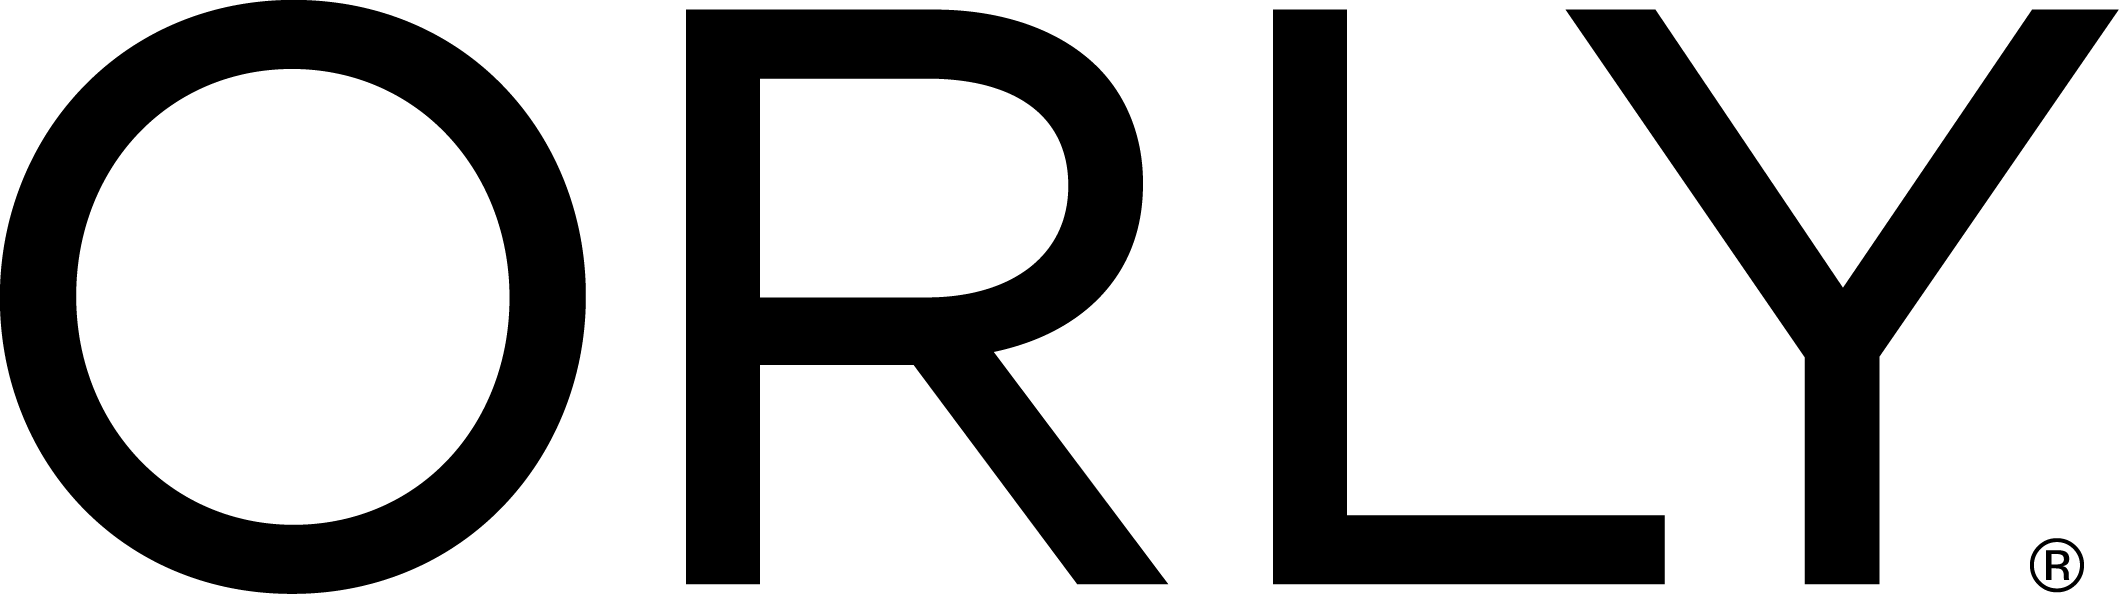 logo ORLY INTERNATIONAL